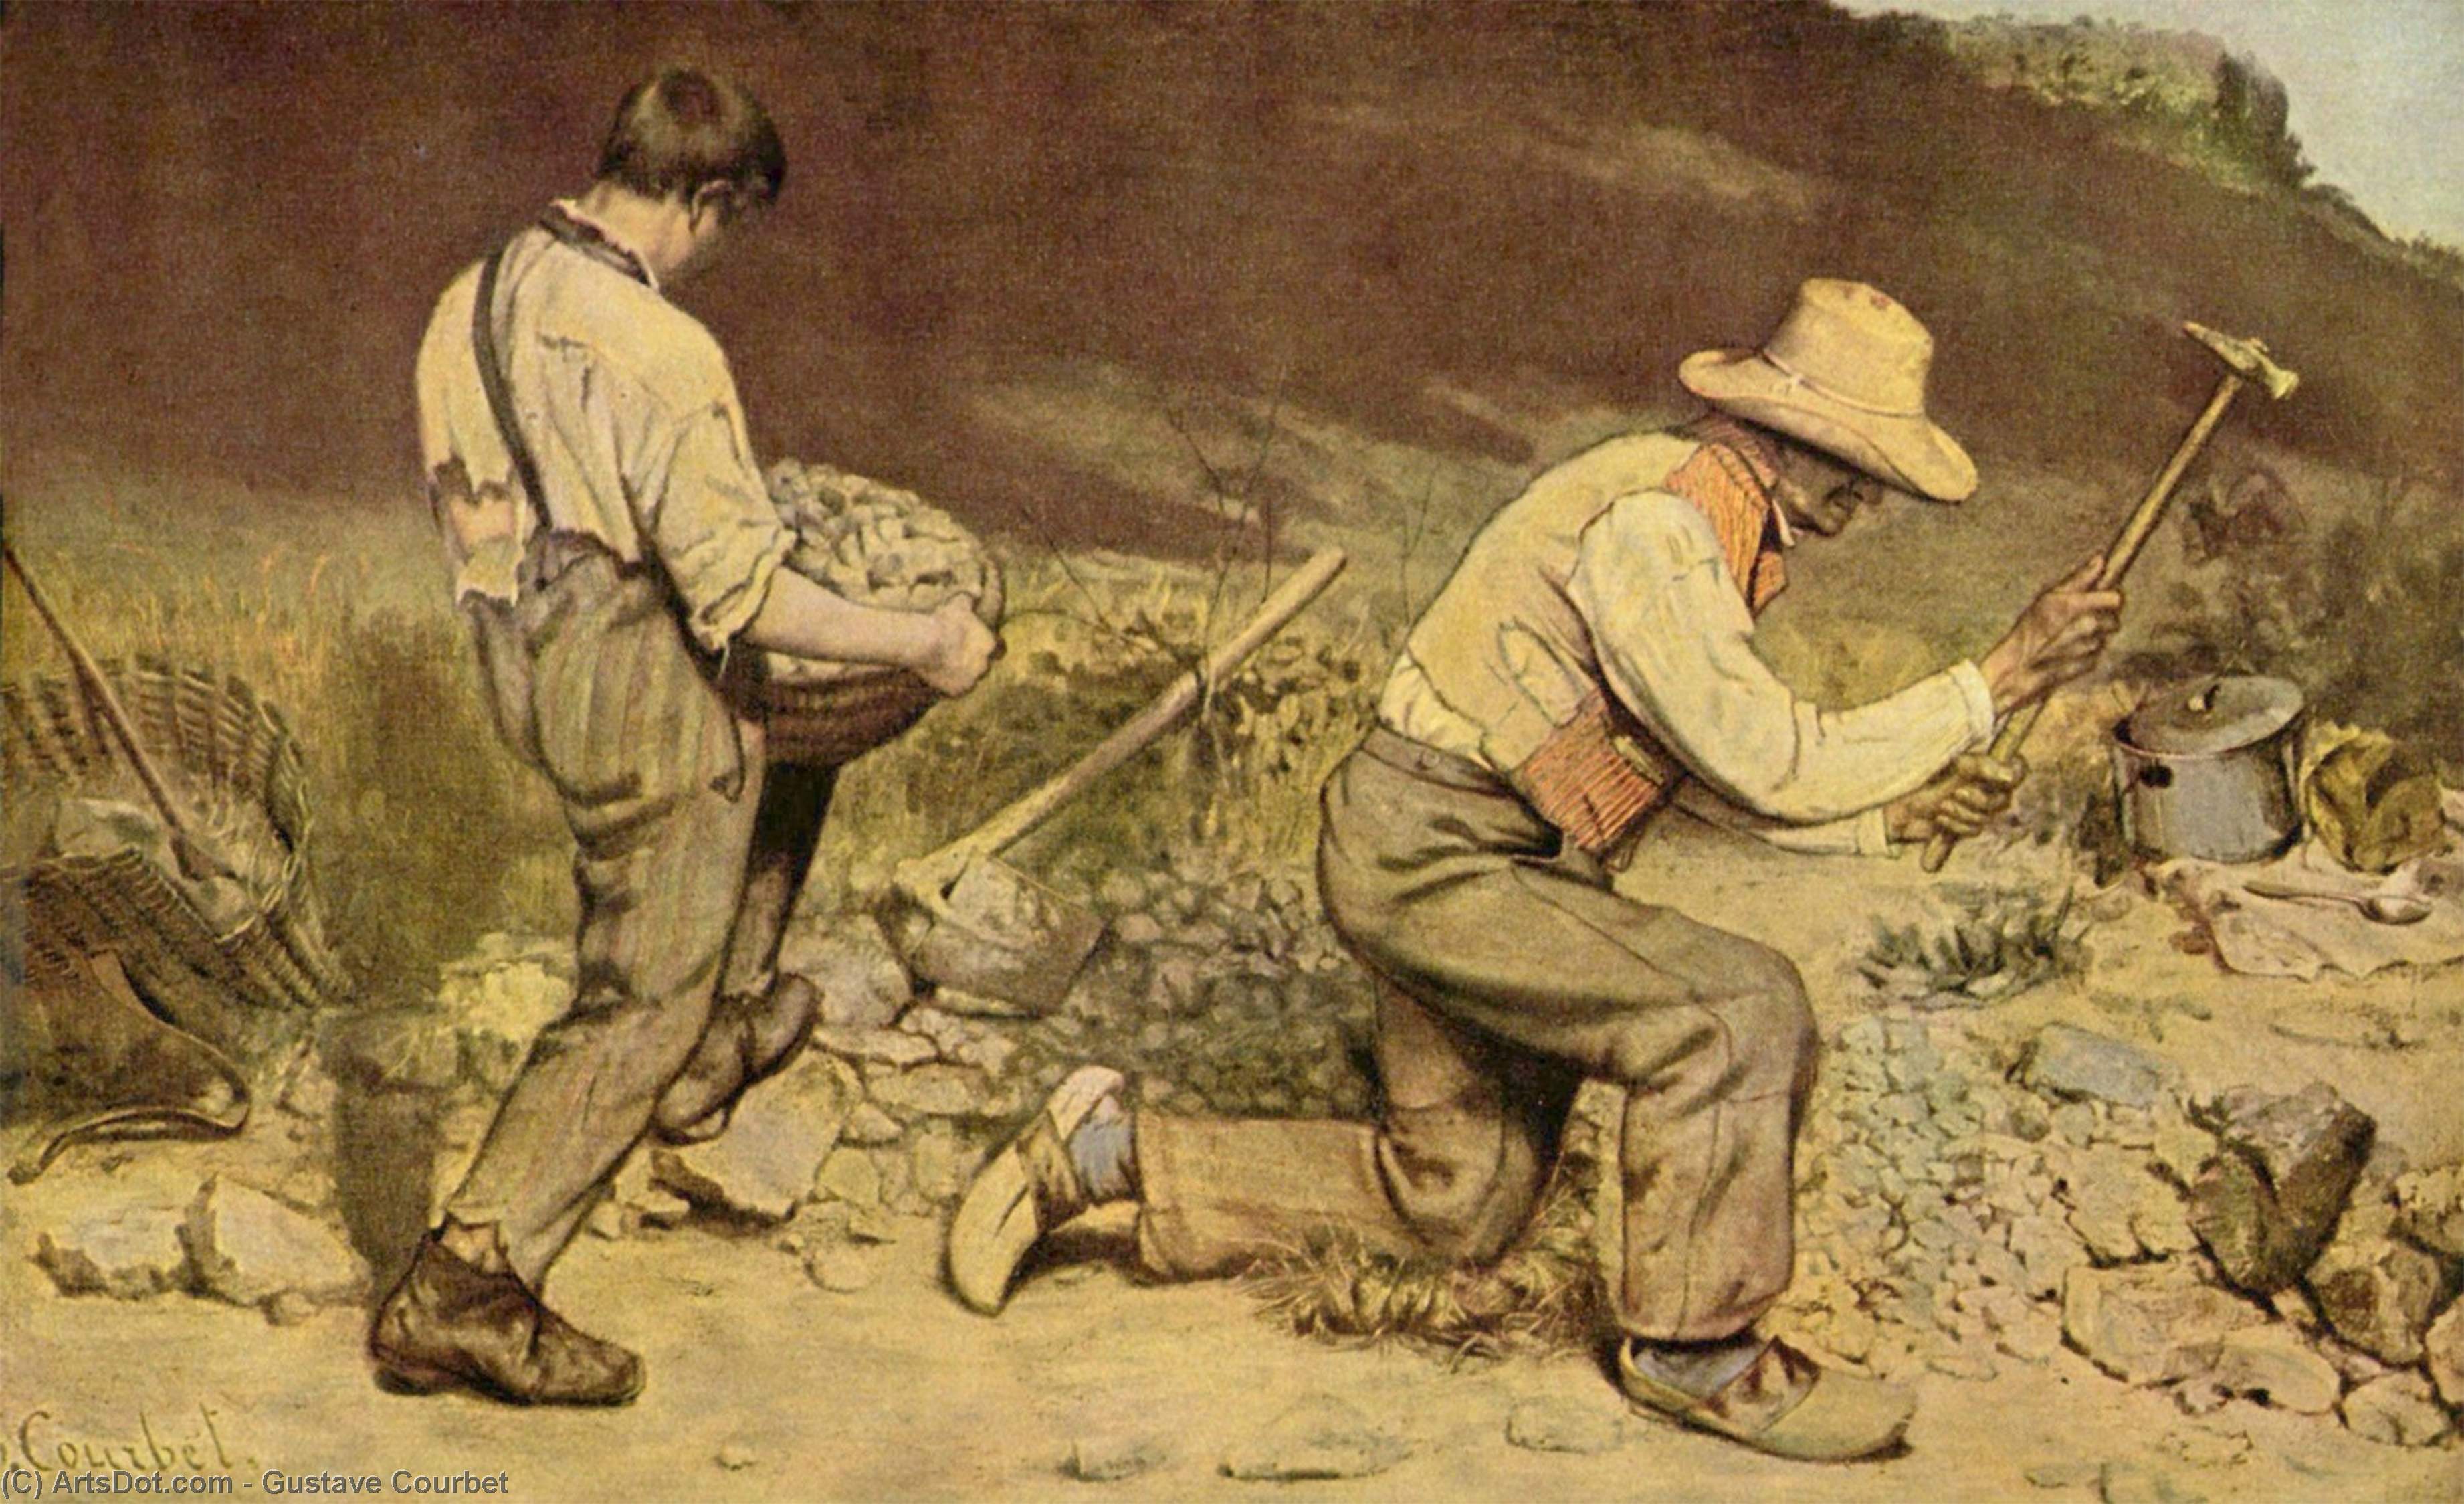 WikiOO.org - אנציקלופדיה לאמנויות יפות - ציור, יצירות אמנות Gustave Courbet - The Stone Breakers